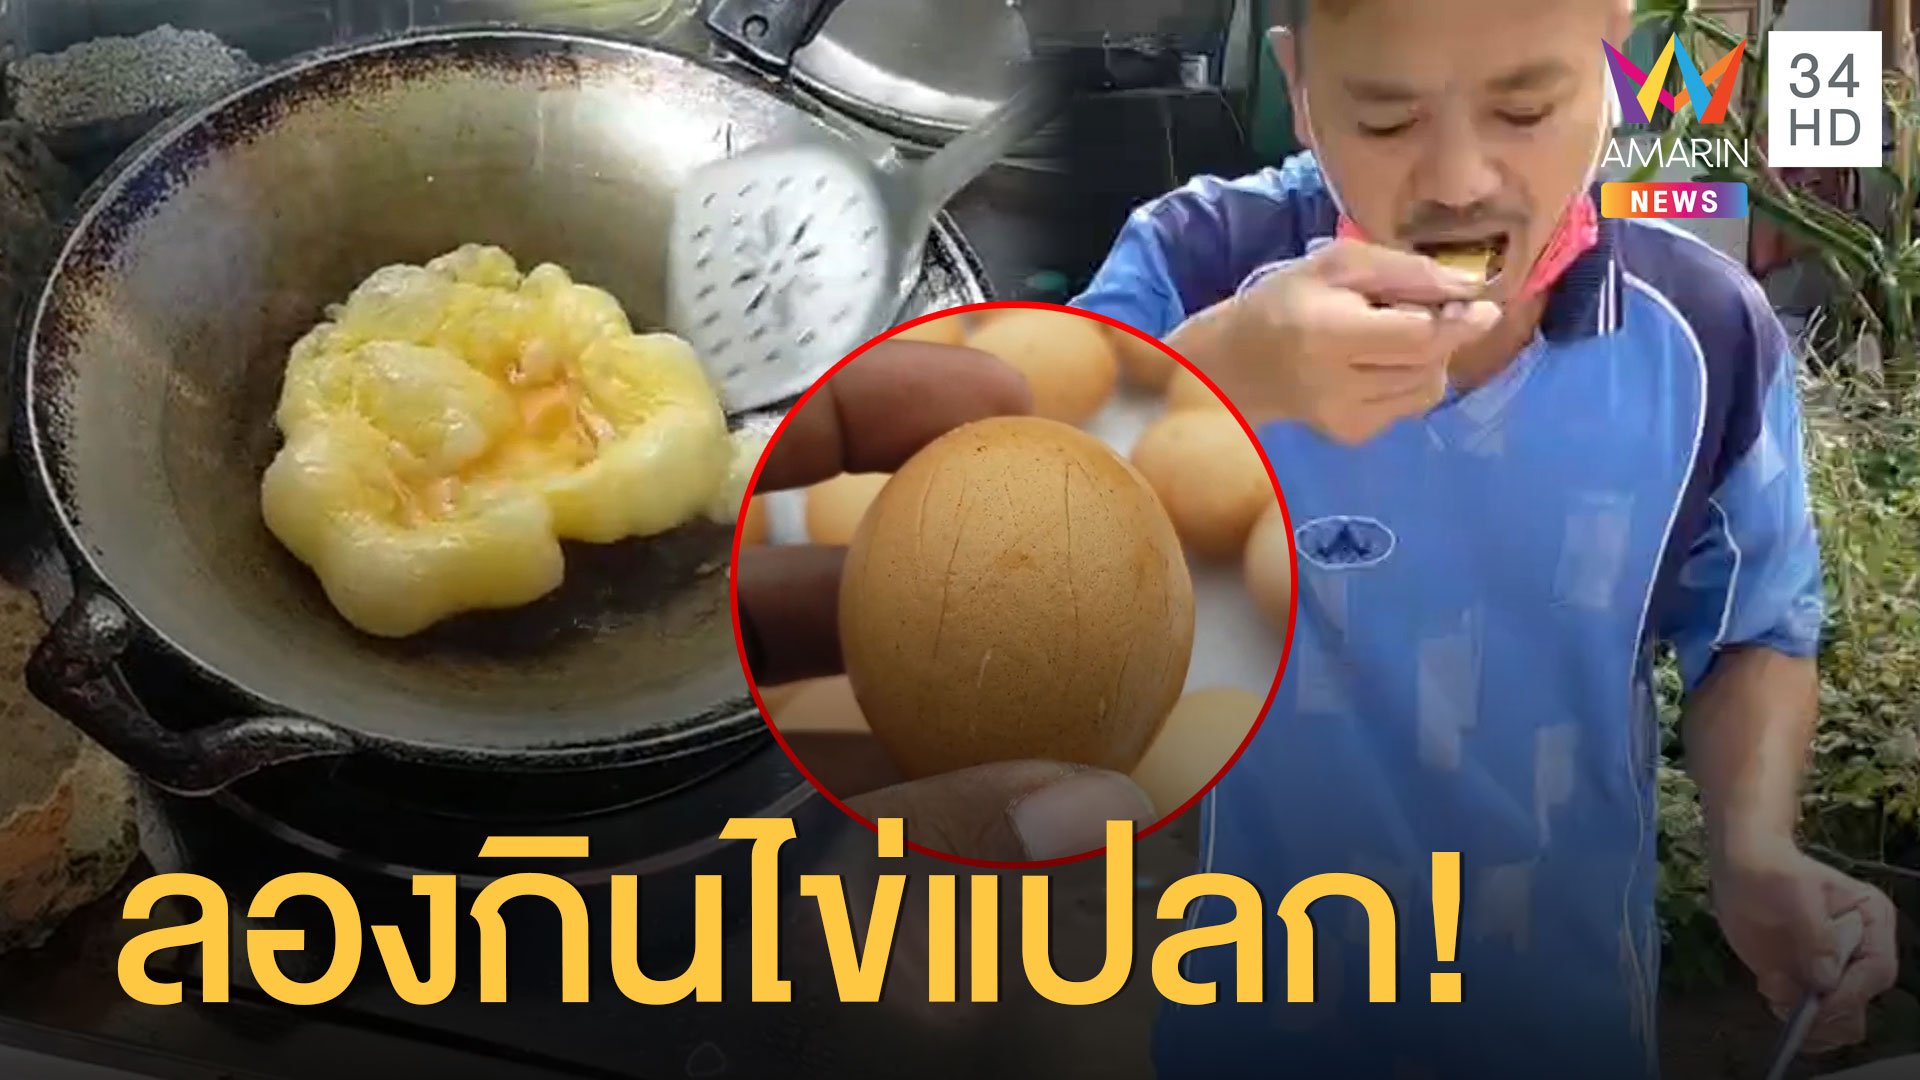 ไข่แปลกระบาด ทดลองกินให้ดู รสชาติไม่เหมือนไข่จริง | ข่าวอรุณอมรินทร์ สุดสัปดาห์ | 30 พ.ค. 63 | AMARIN TVHD34